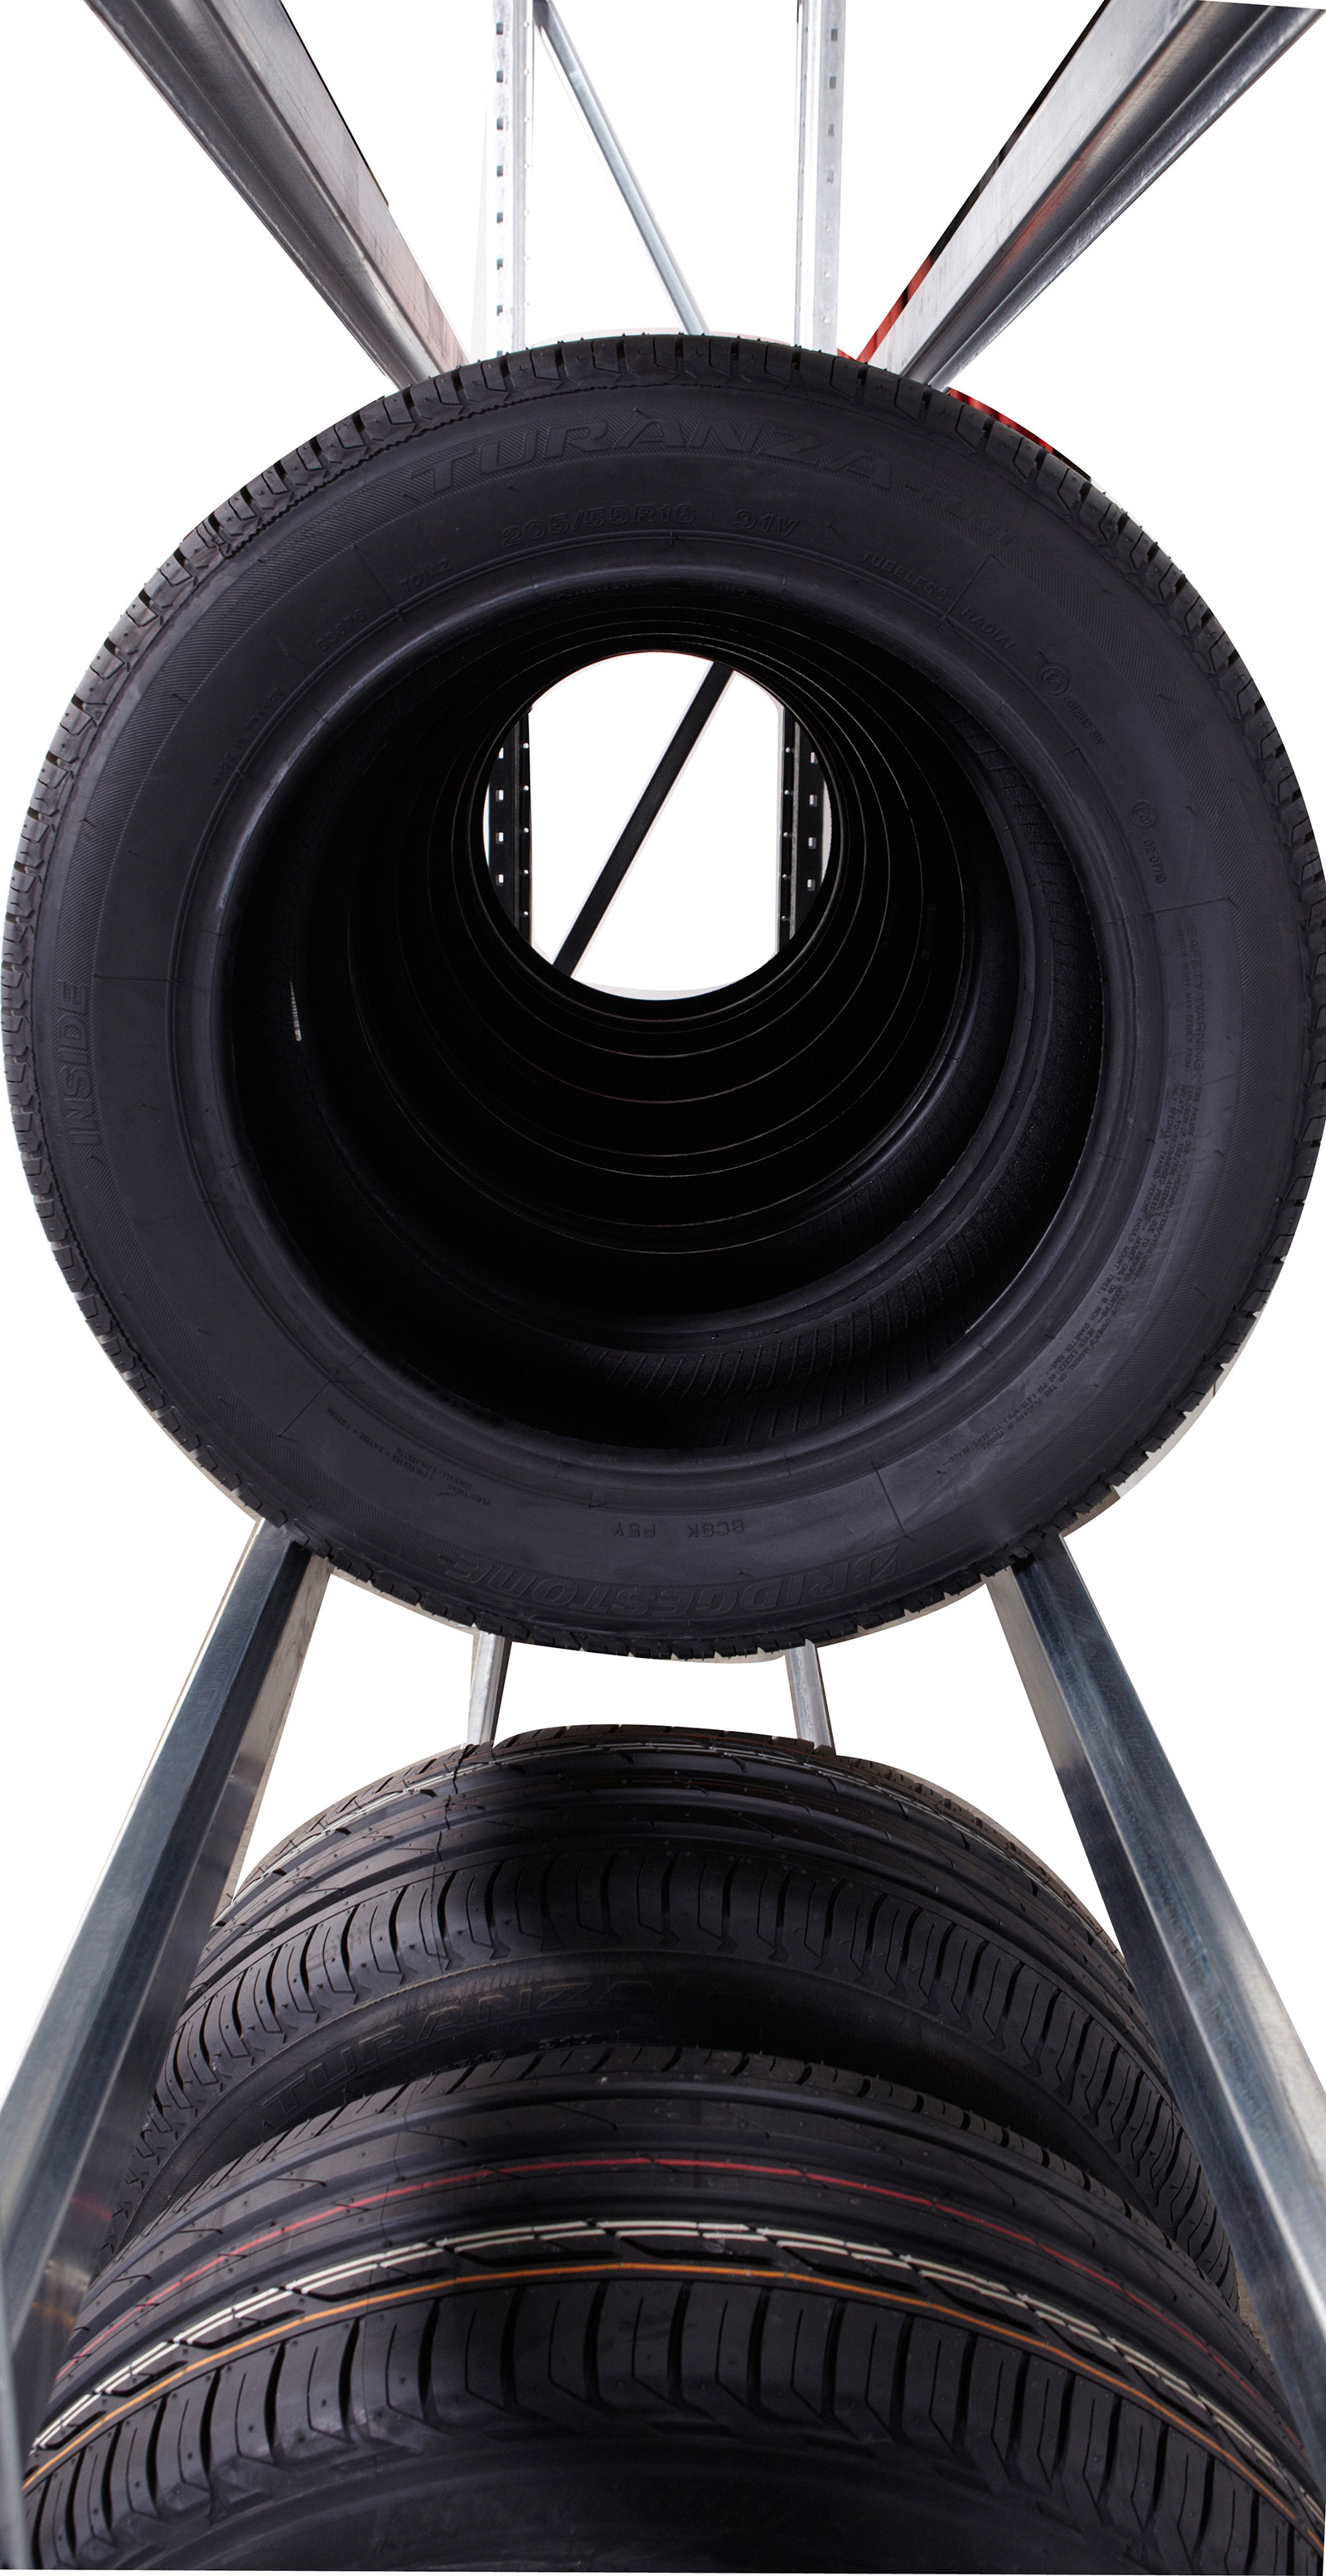 Regál na skladování pneumatik